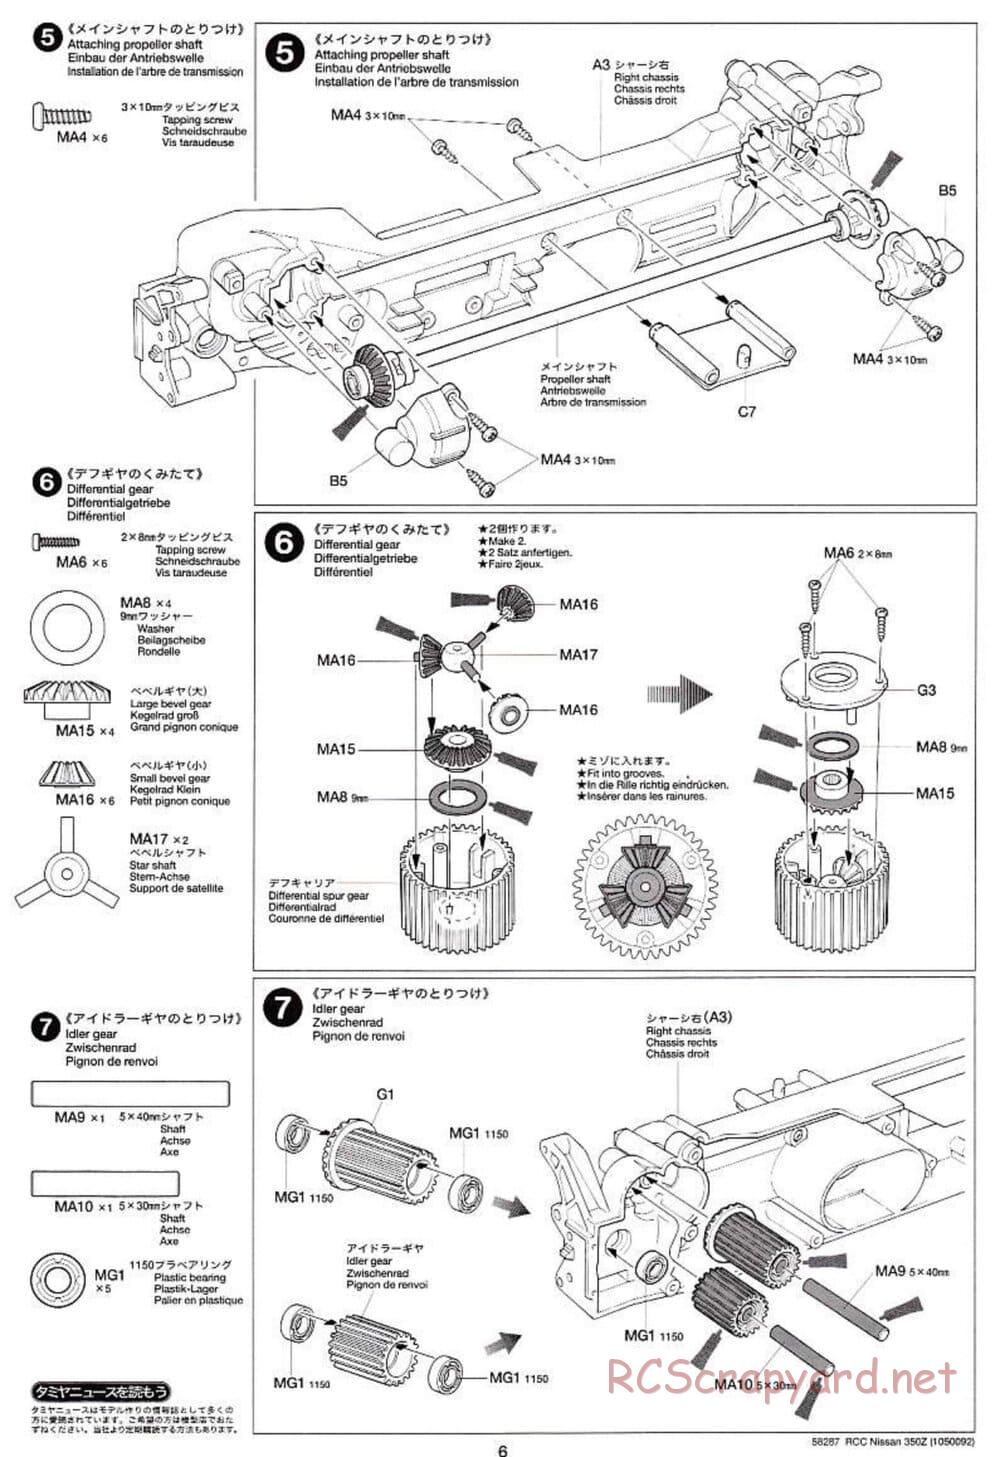 Tamiya - Nissan 350Z - TL-01 Chassis - Manual - Page 6